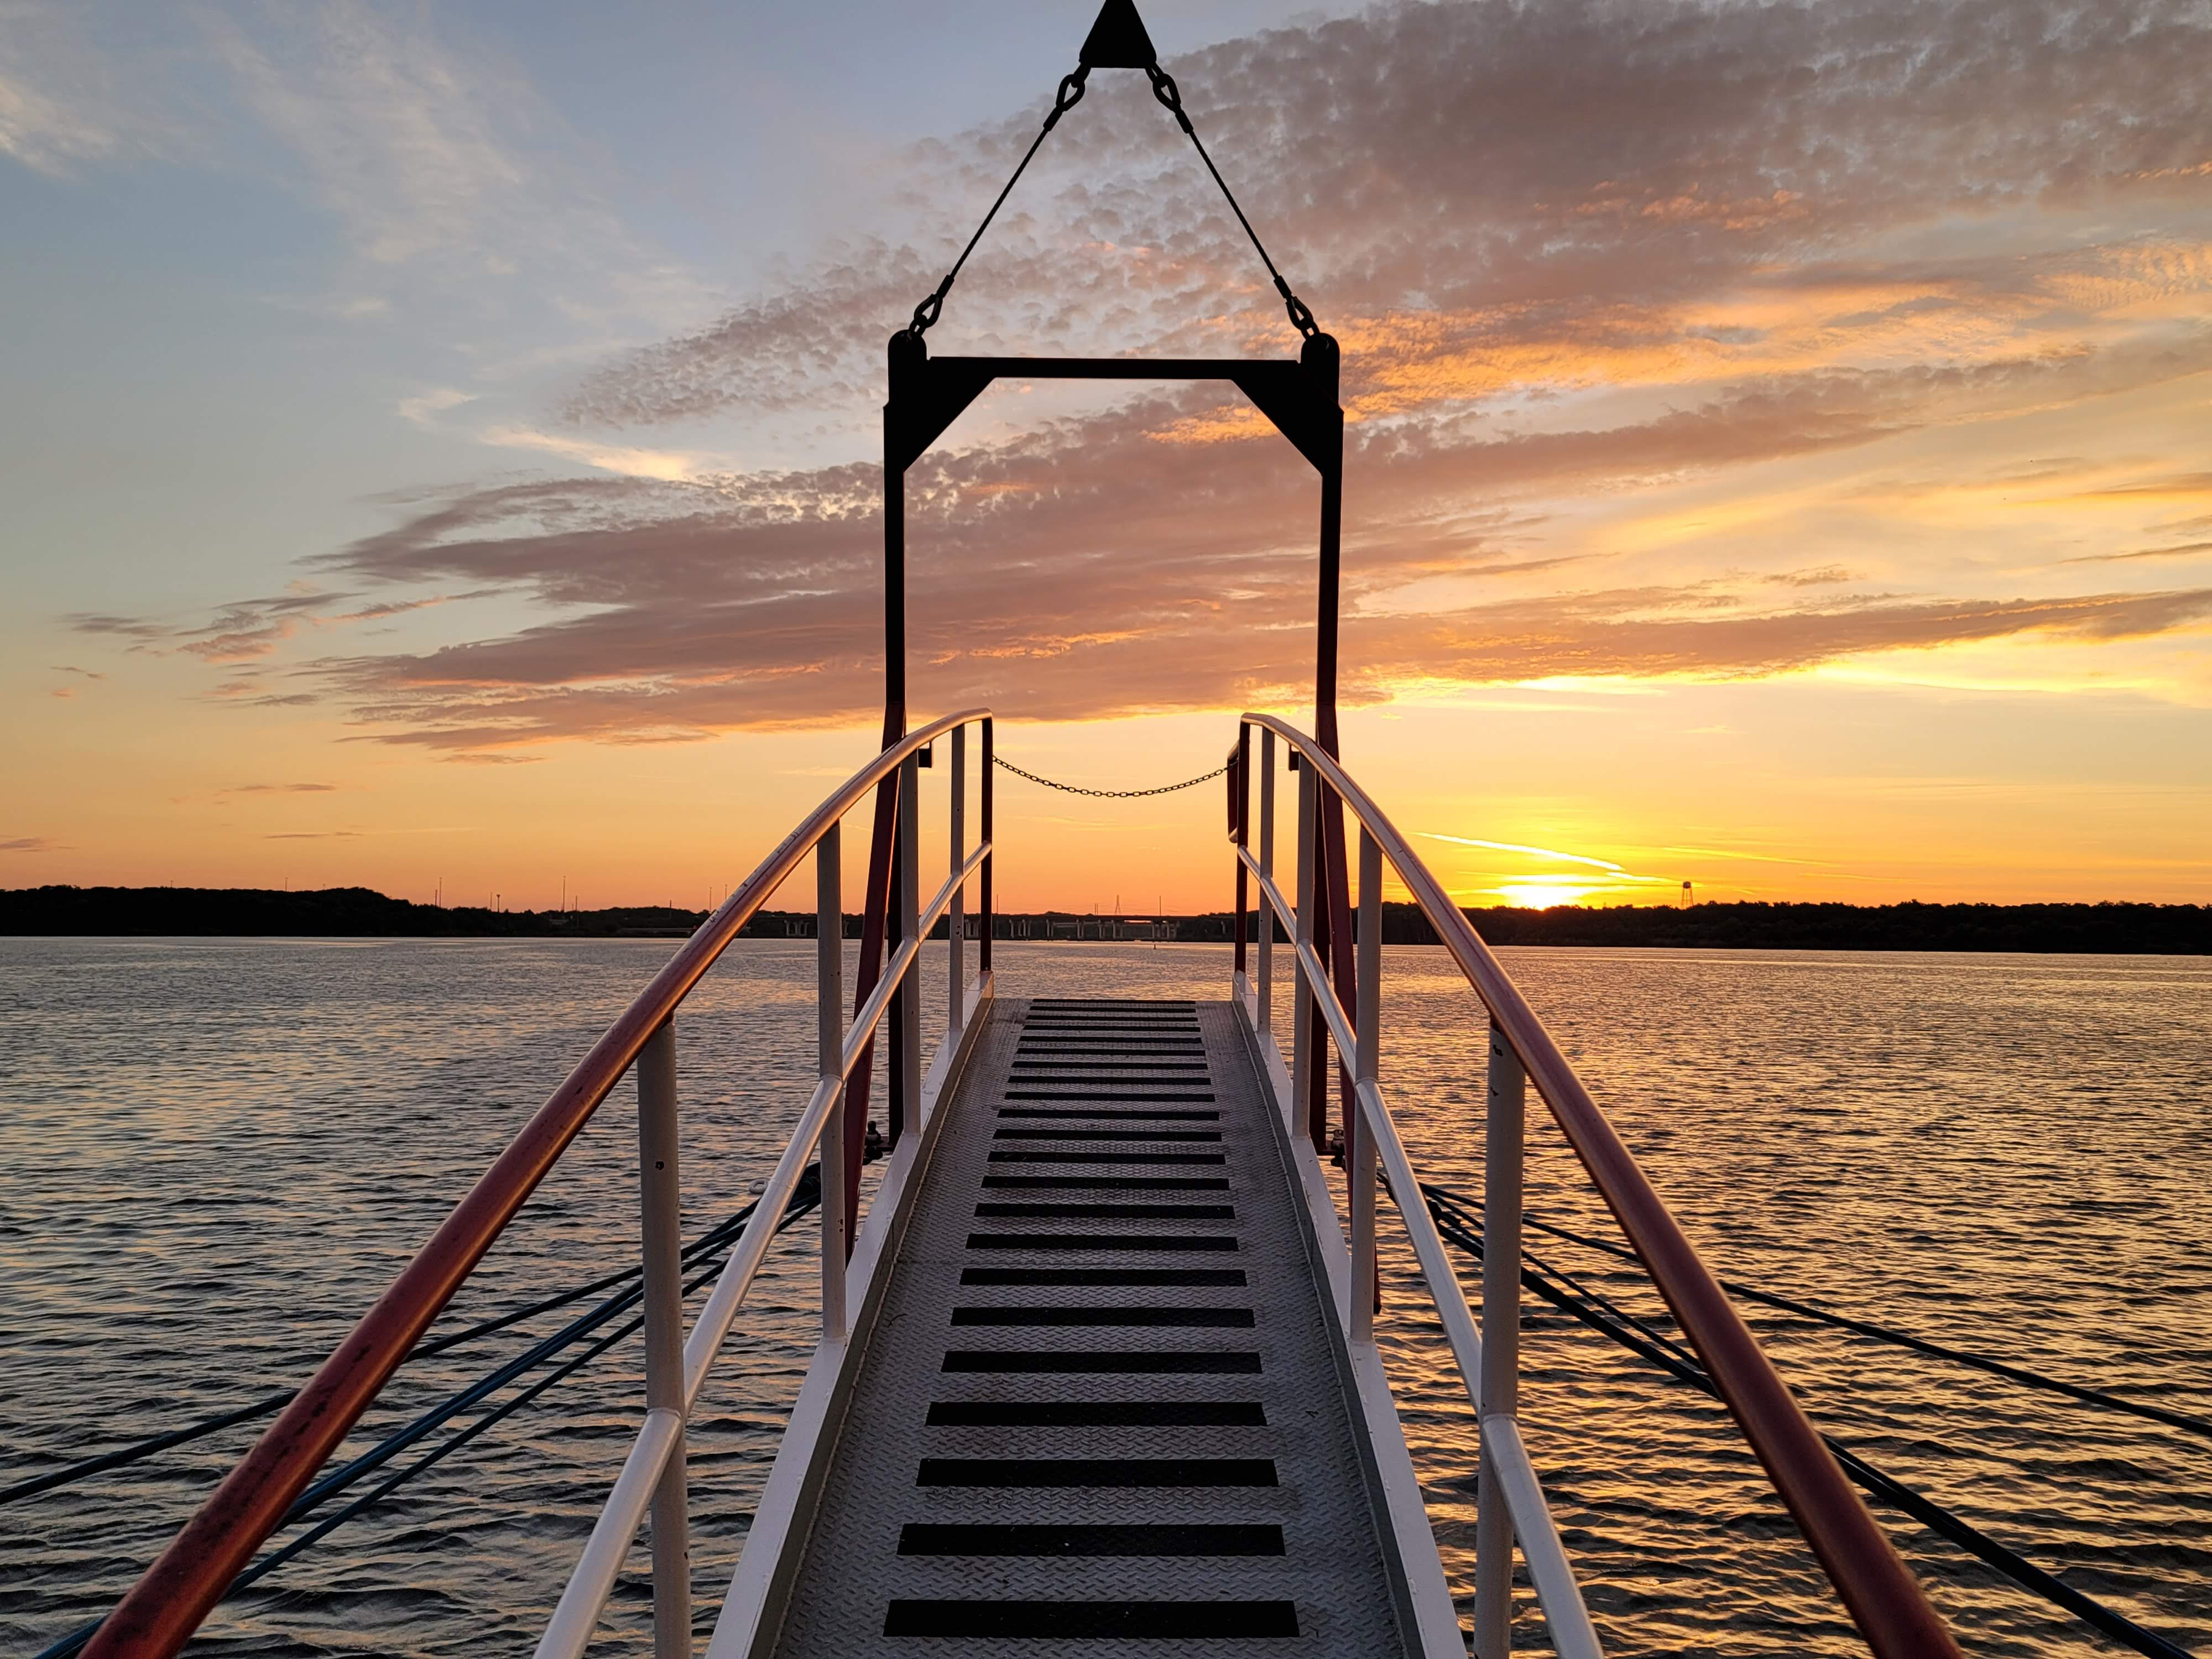 Sunset on a paddlewheel boat 13